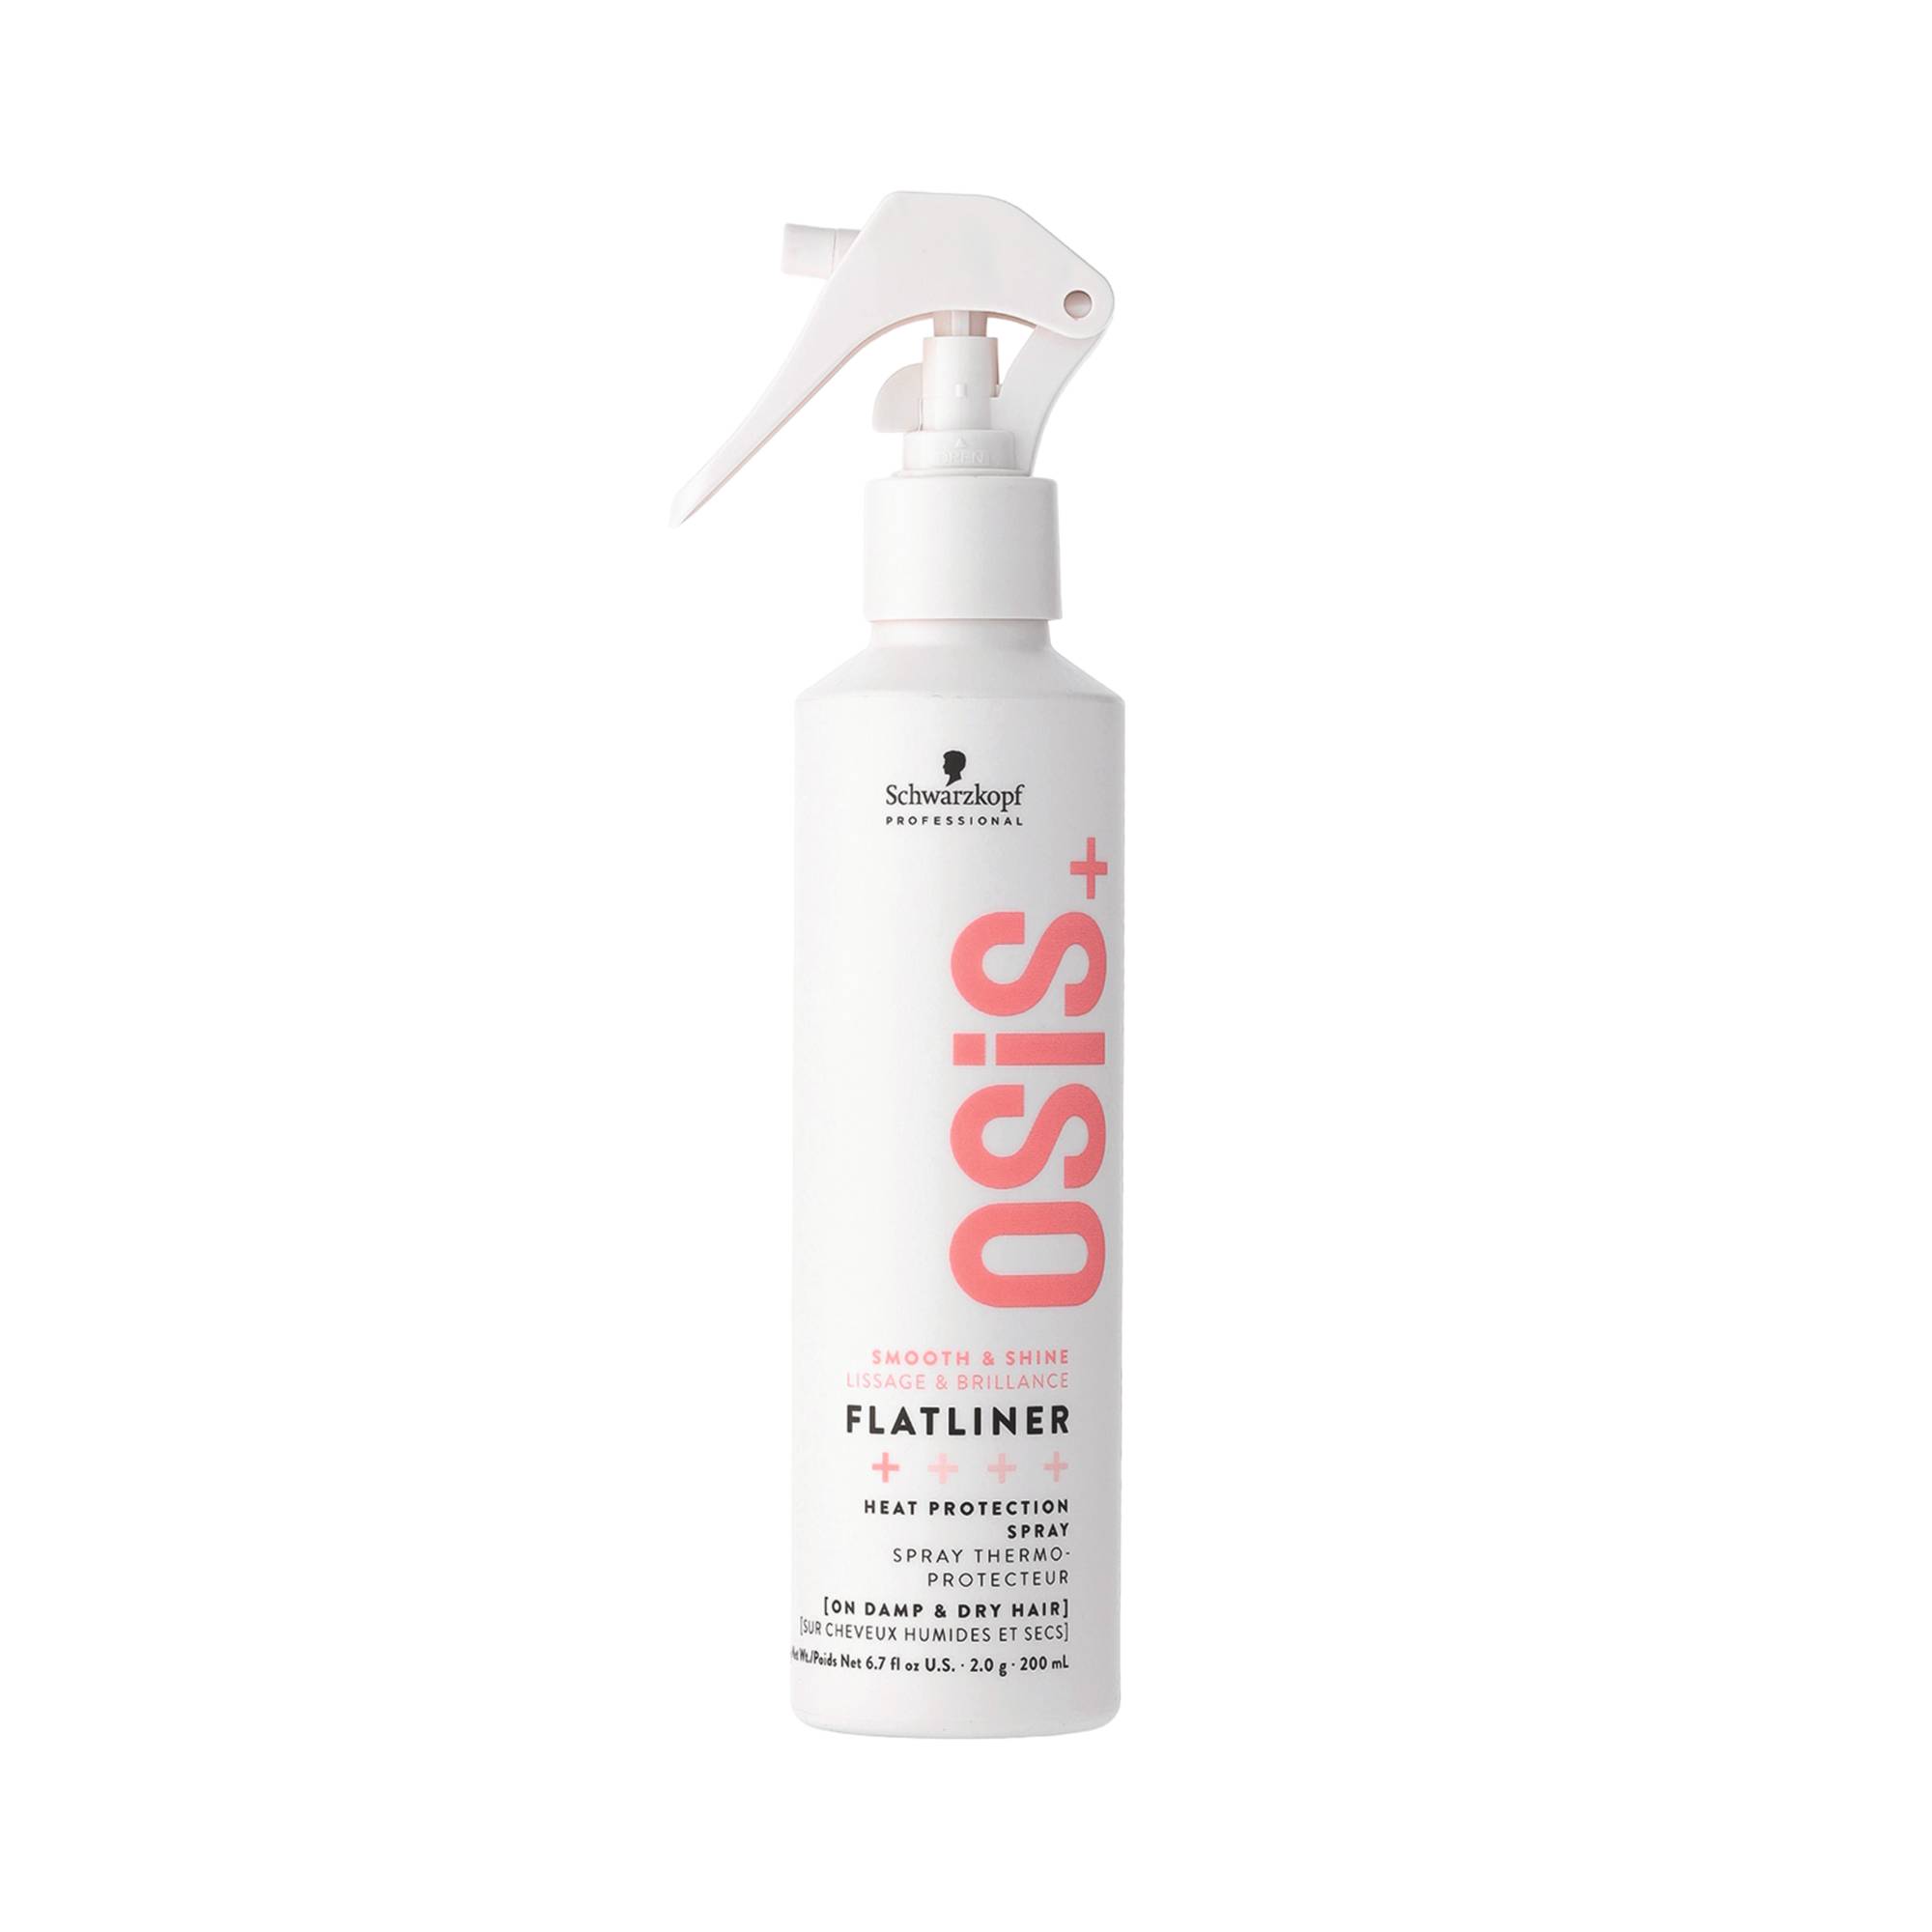 Spray thermo-protecteur Osis+ Flatliner de la marque Schwarzkopf Professional Contenance 200ml - 1